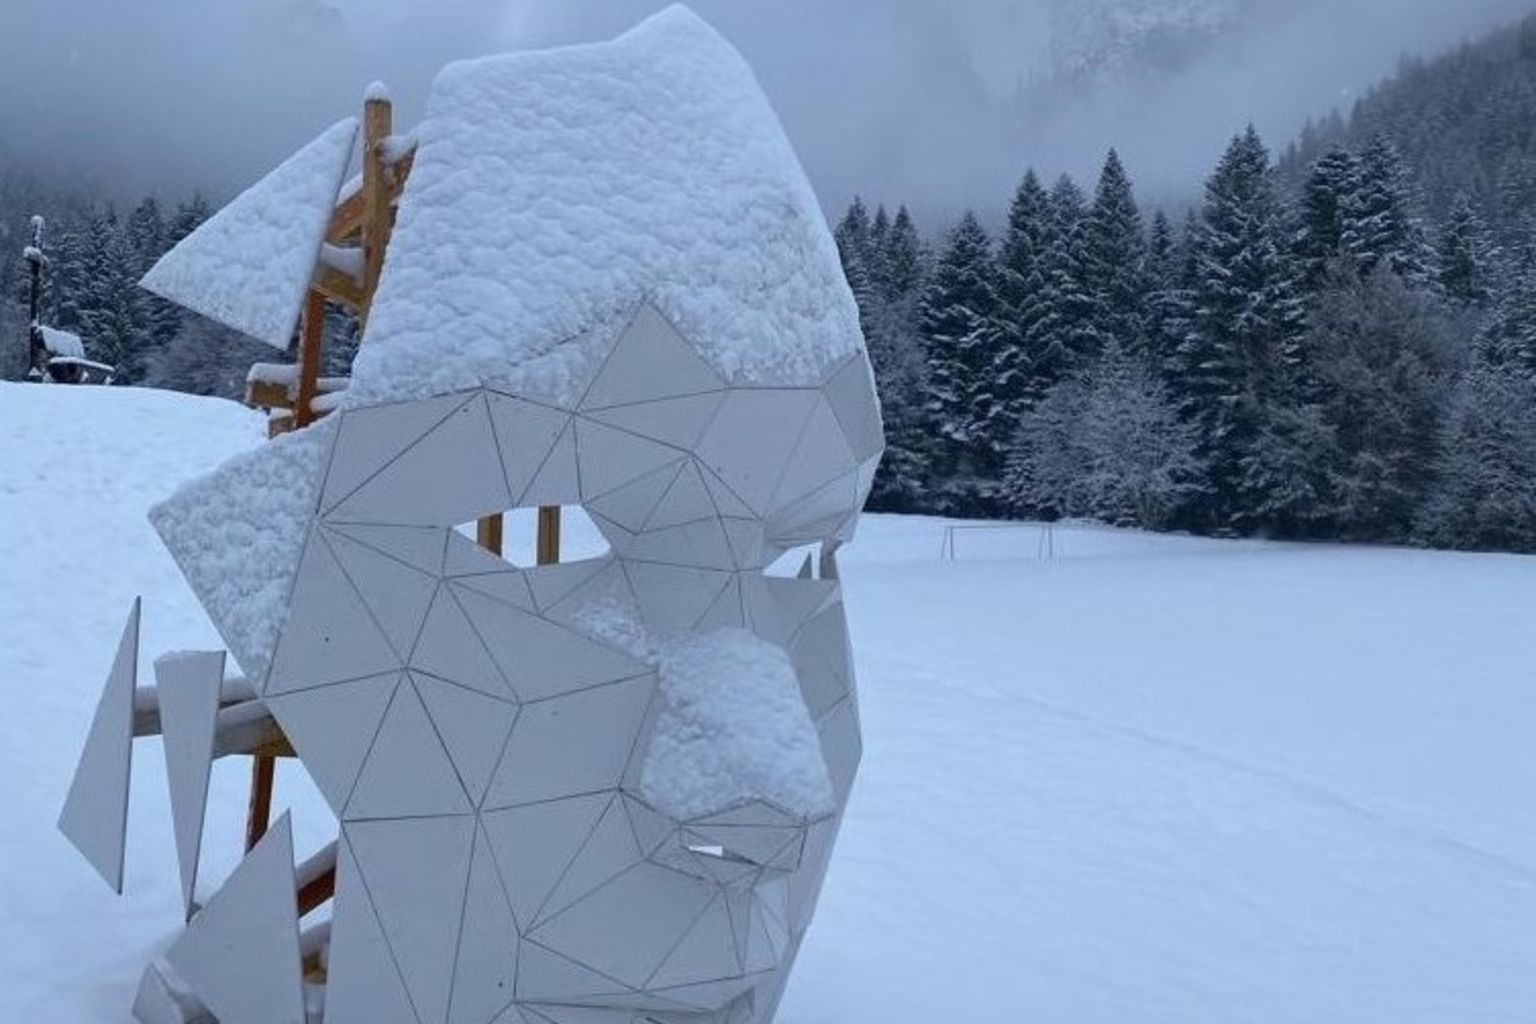 Torgon sculpture in the snow, Valais, Switzerland